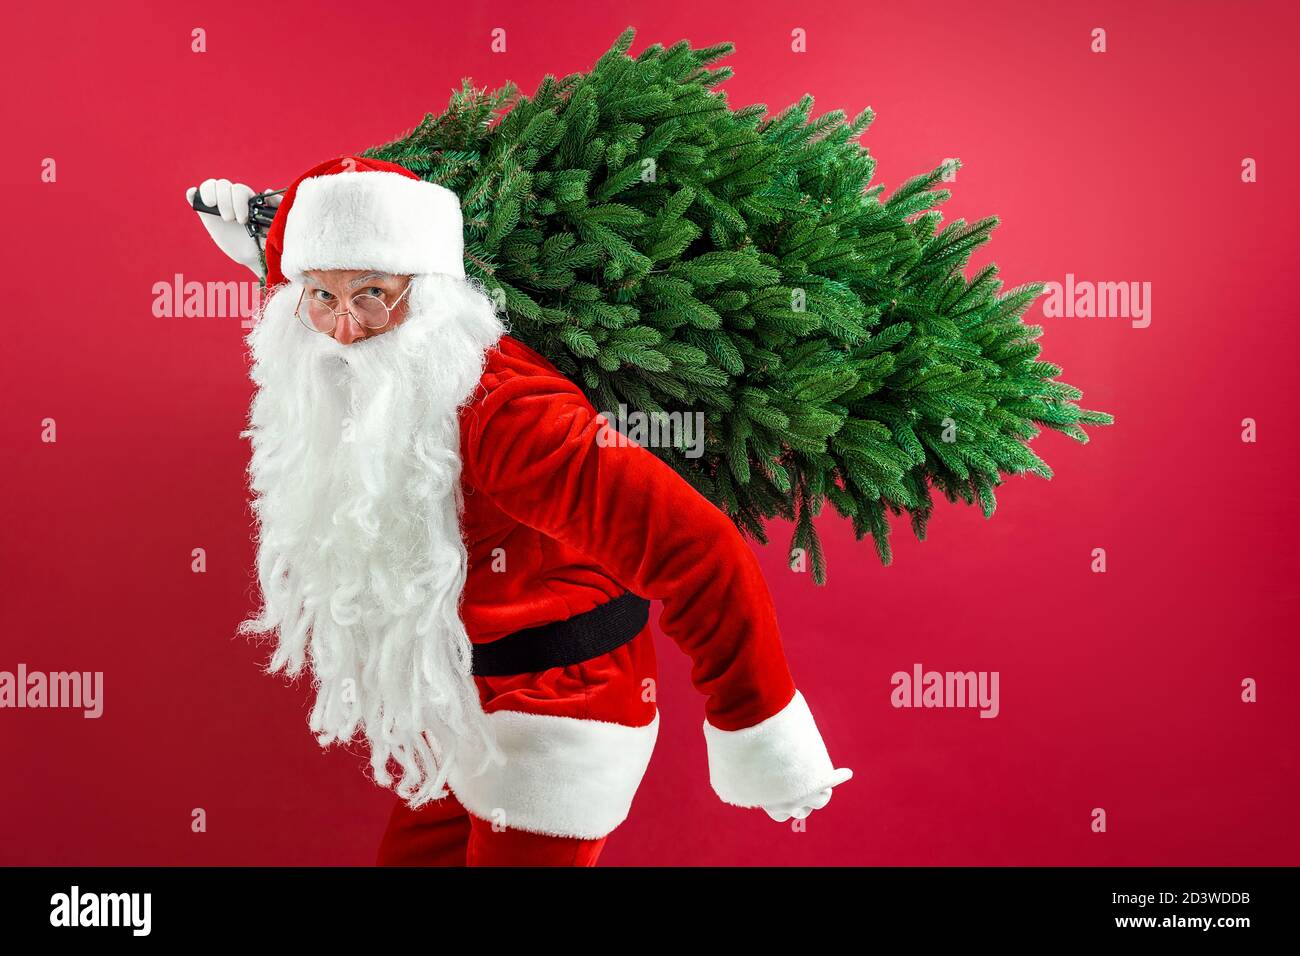 Santa uomo che porta albero di natale. Natale, anno nuovo, vacanze.  Decorazioni natalizie. L'uomo bearded vestito in costume festivo di Babbo  Natale porta l'albero di Natale. Pino. Costume di Babbo Natale Foto